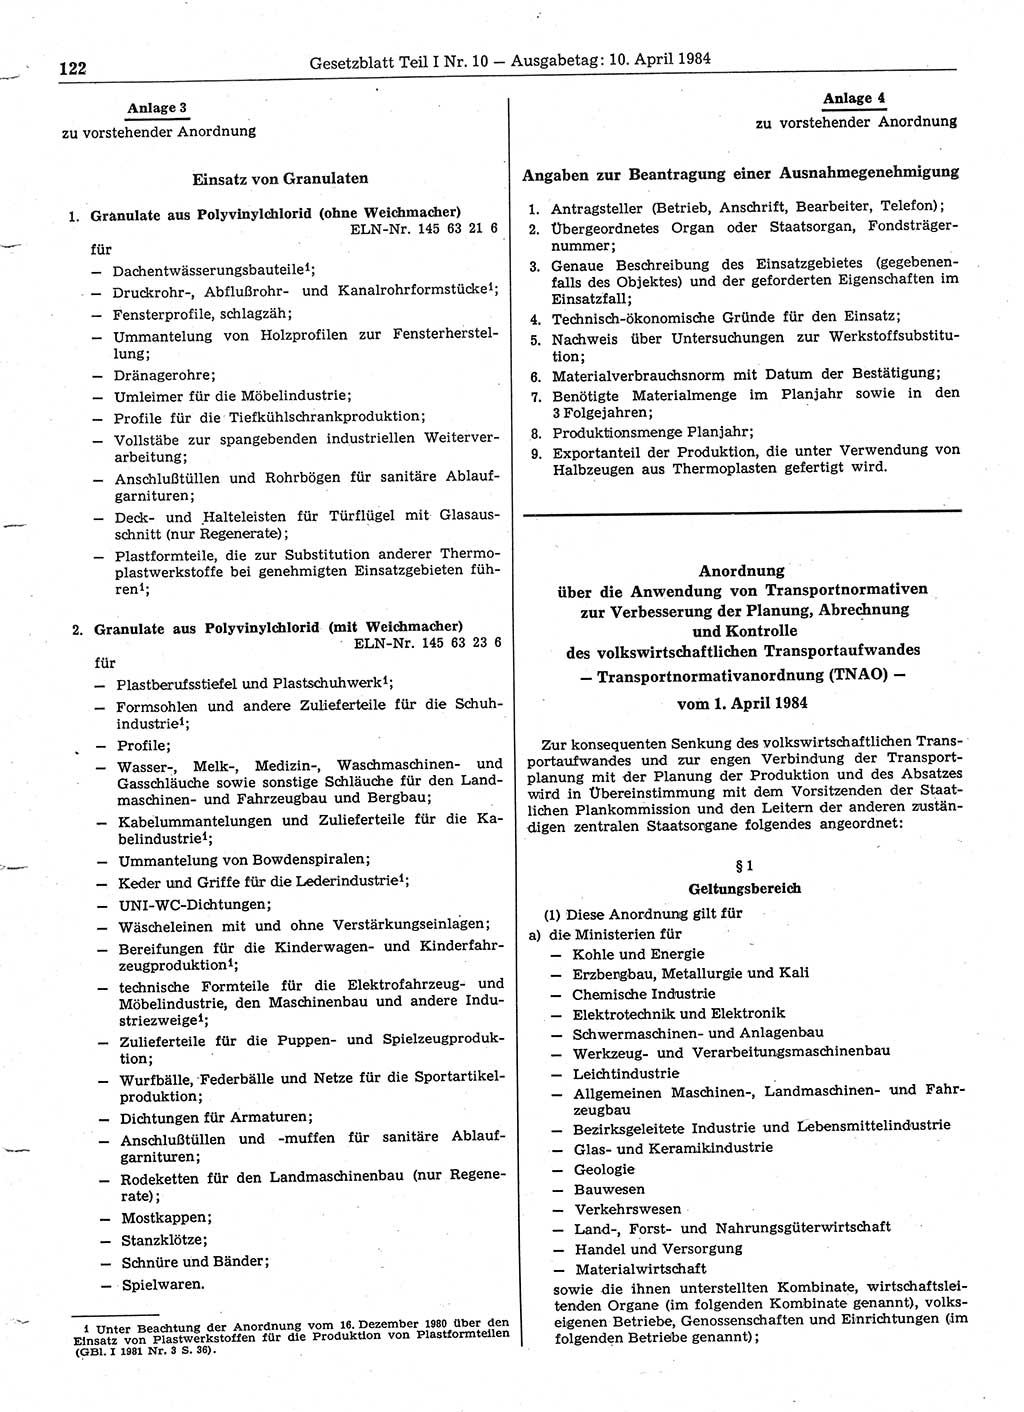 Gesetzblatt (GBl.) der Deutschen Demokratischen Republik (DDR) Teil Ⅰ 1984, Seite 122 (GBl. DDR Ⅰ 1984, S. 122)